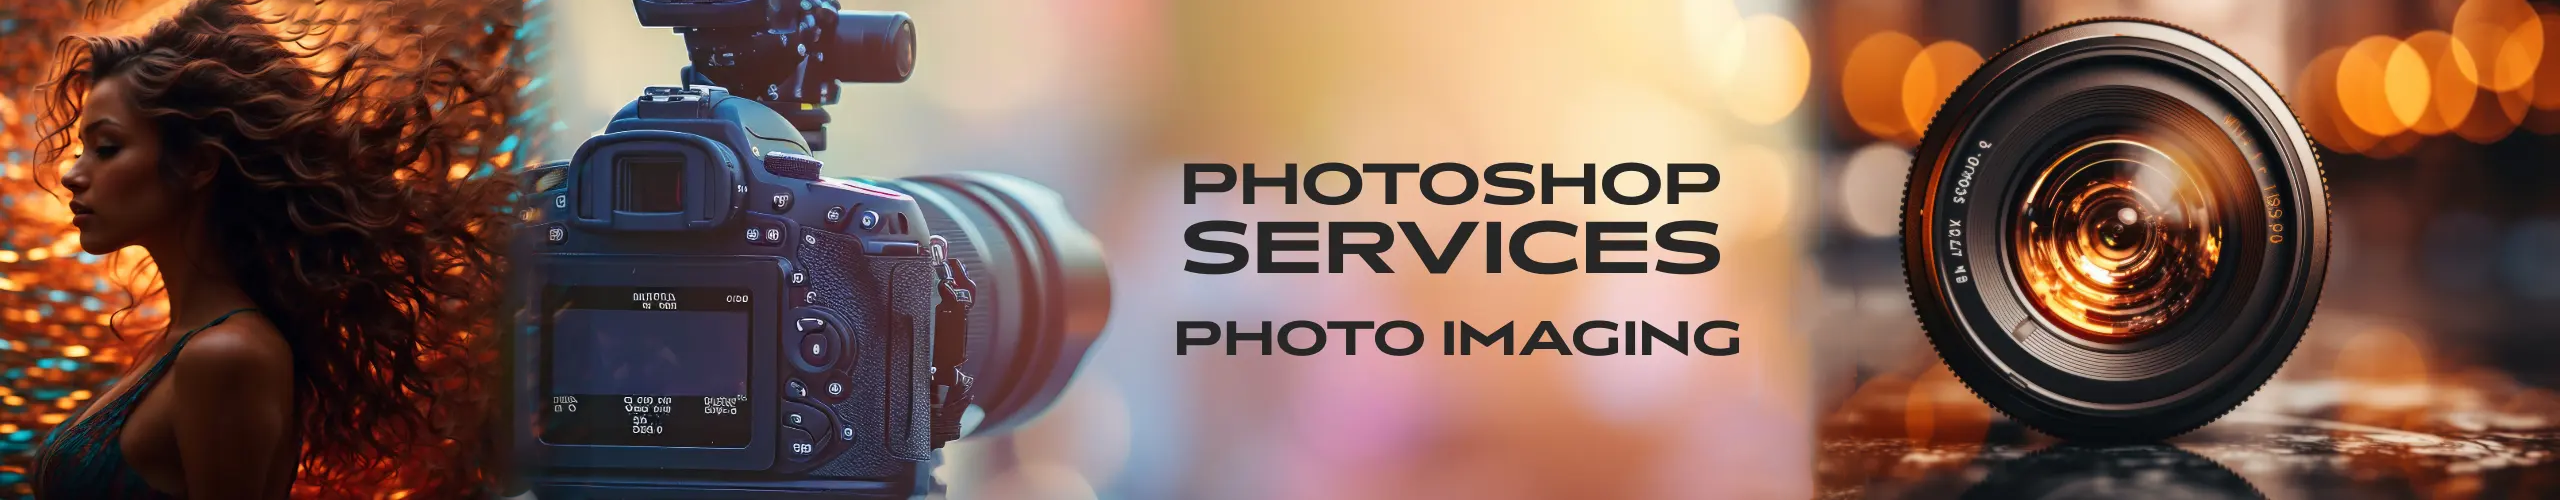 photoshop service photo imaging